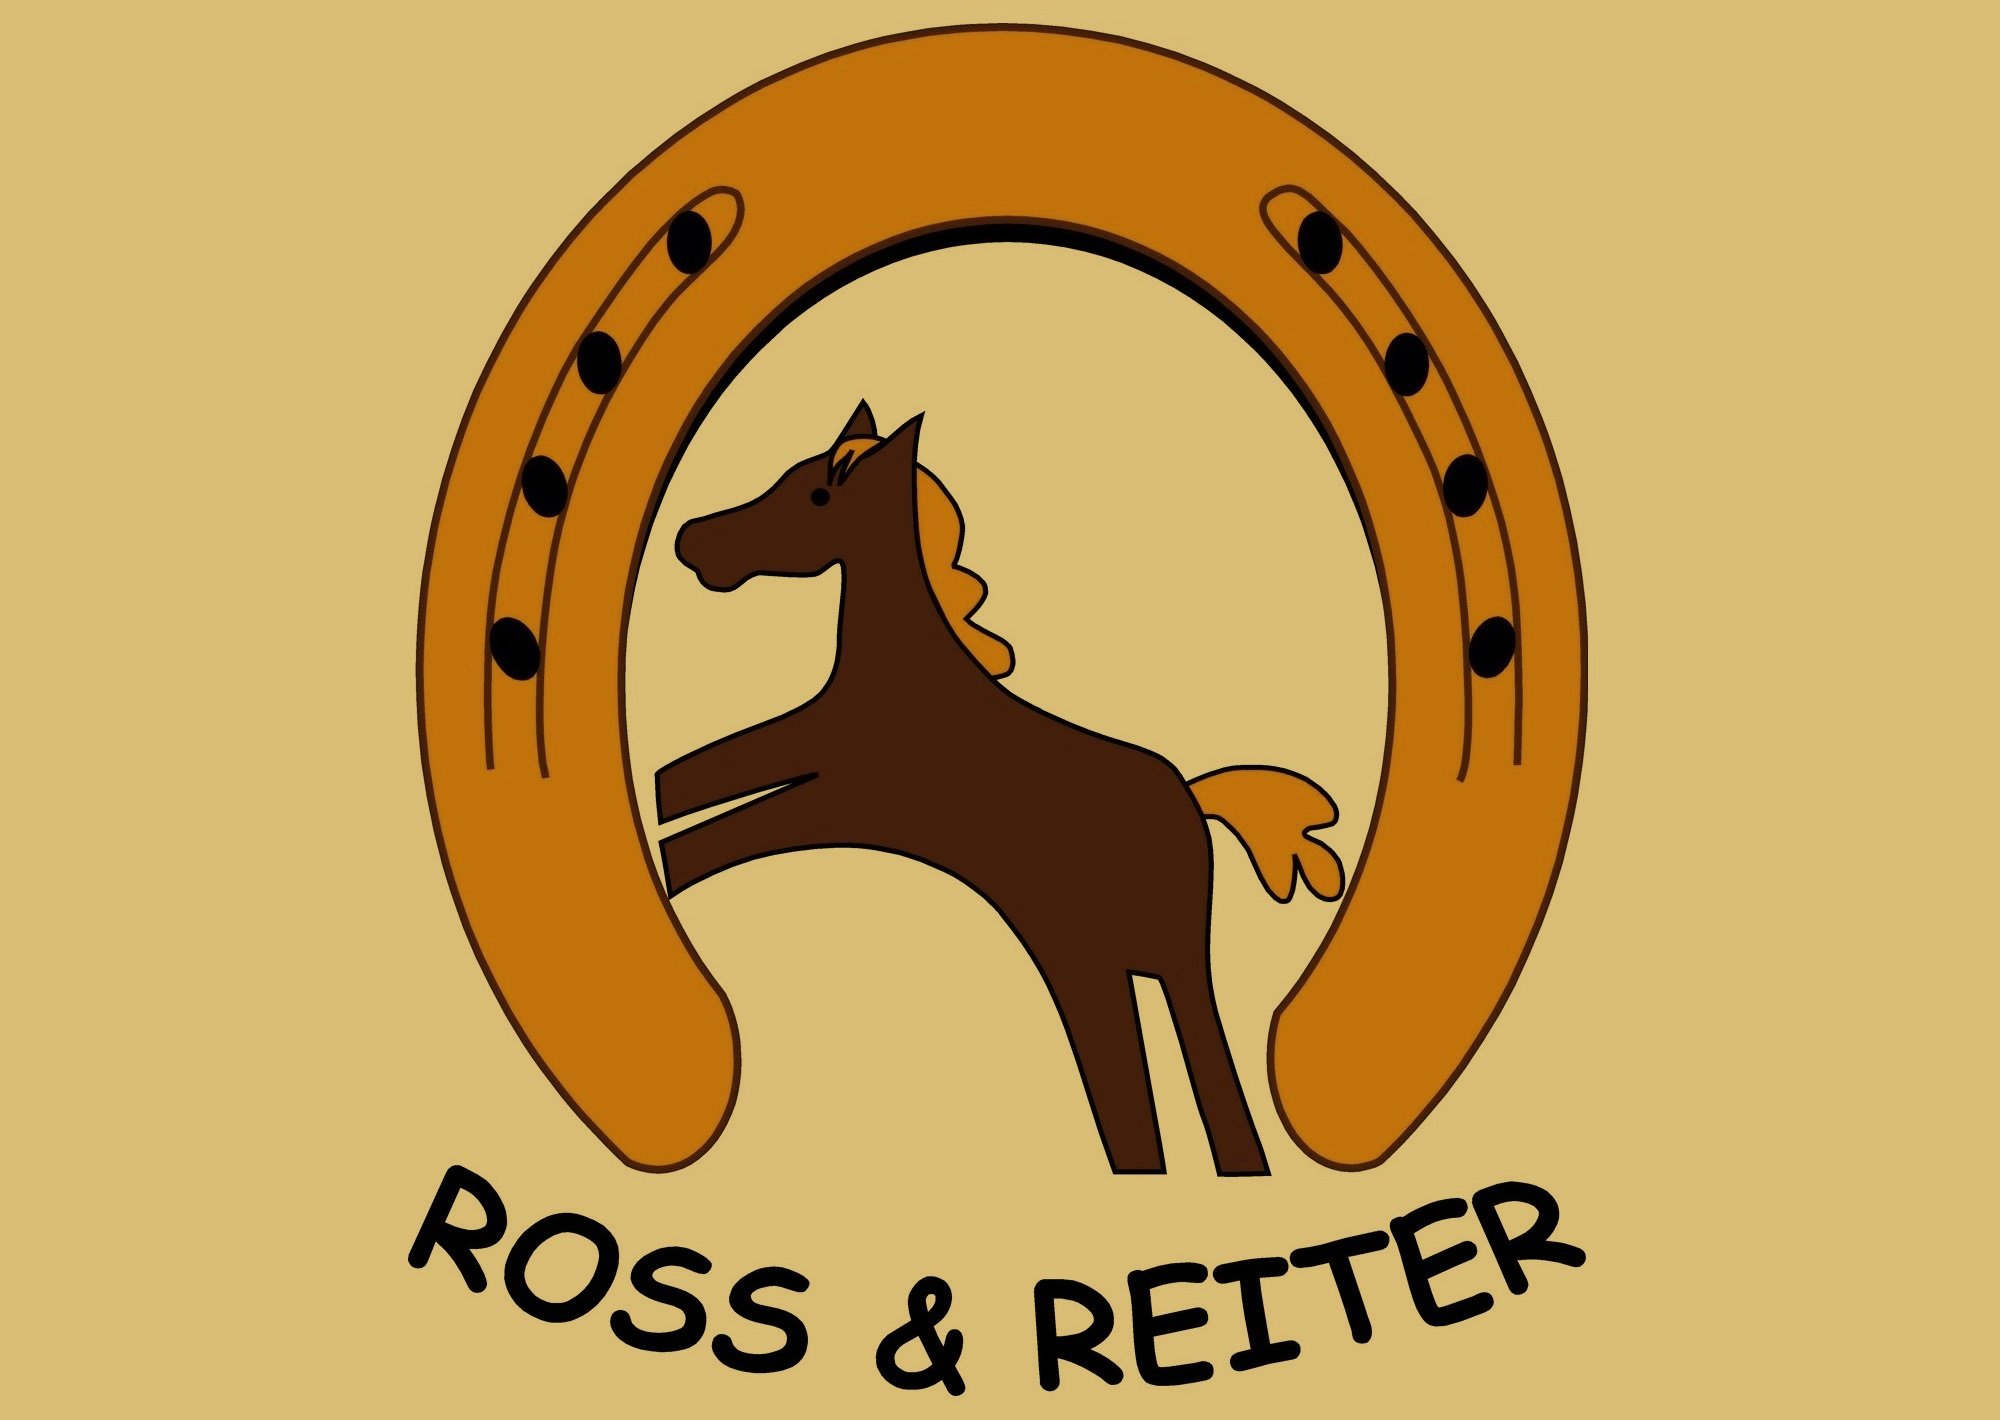 ROSS & REITER